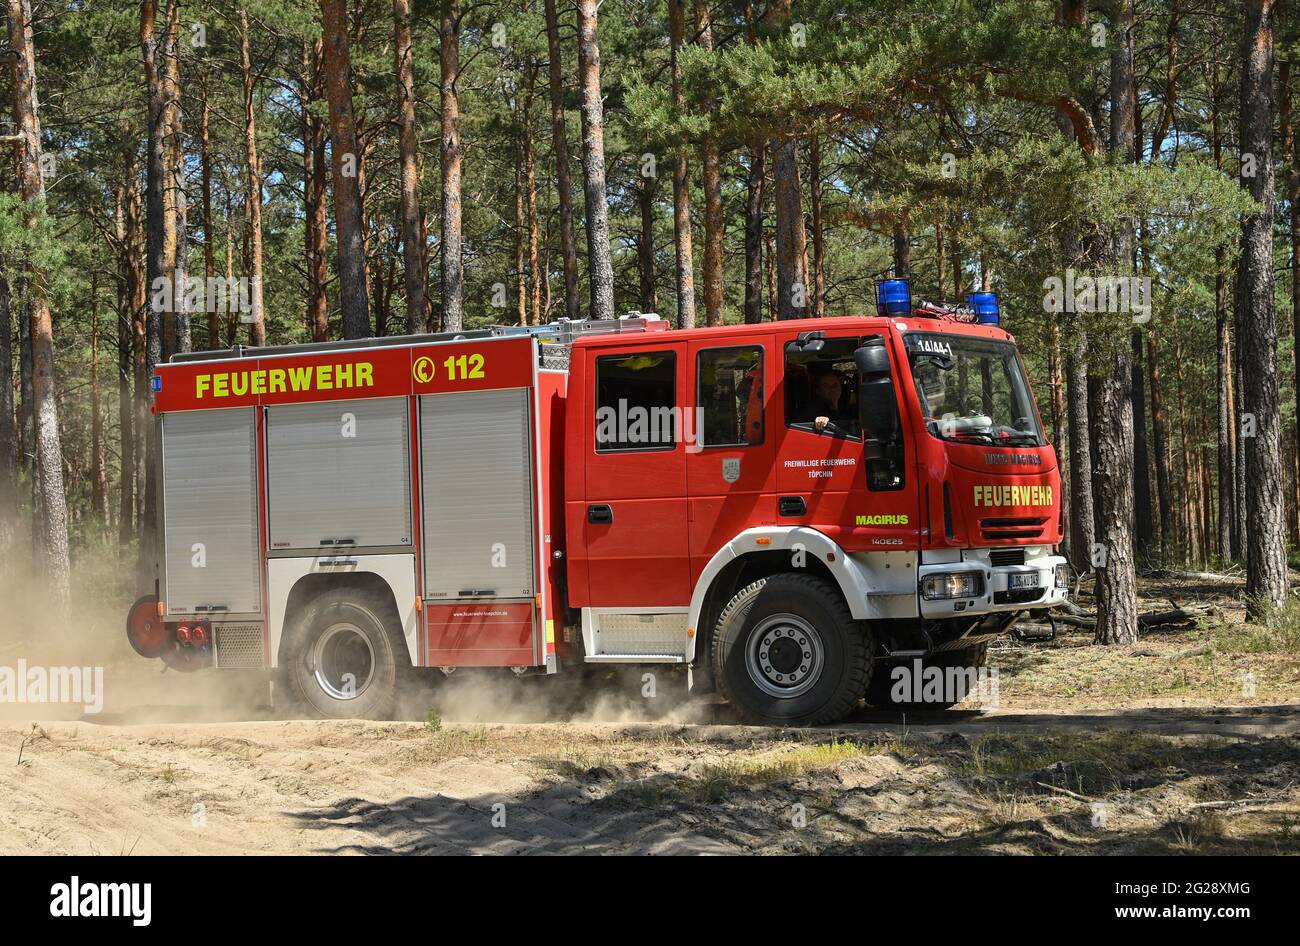 09 juin 2021, Brandebourg, Wünsdorf : un incendie du service d'incendie est en route vers un incendie dans une forêt de pins près de Wünsdorf. Avec la hausse des températures, le danger des incendies de forêt a augmenté dans le Brandebourg. Actuellement, le niveau de danger d'incendie de forêt 4 est en vigueur dans tout l'État de Brandebourg. Deux centres d'incendie de forêt à Wünsdorf (Teltow-Fläming) et Eberswalde (Barnim) surveillent les événements dans l'État. À partir de la phase 3, ils sont habités. Selon le ministère de l'Environnement, l'année dernière, il y a eu 299 incendies de forêt dans le Brandebourg sur 118.5 hectares de terres. Photo: Patrick Pleul Banque D'Images